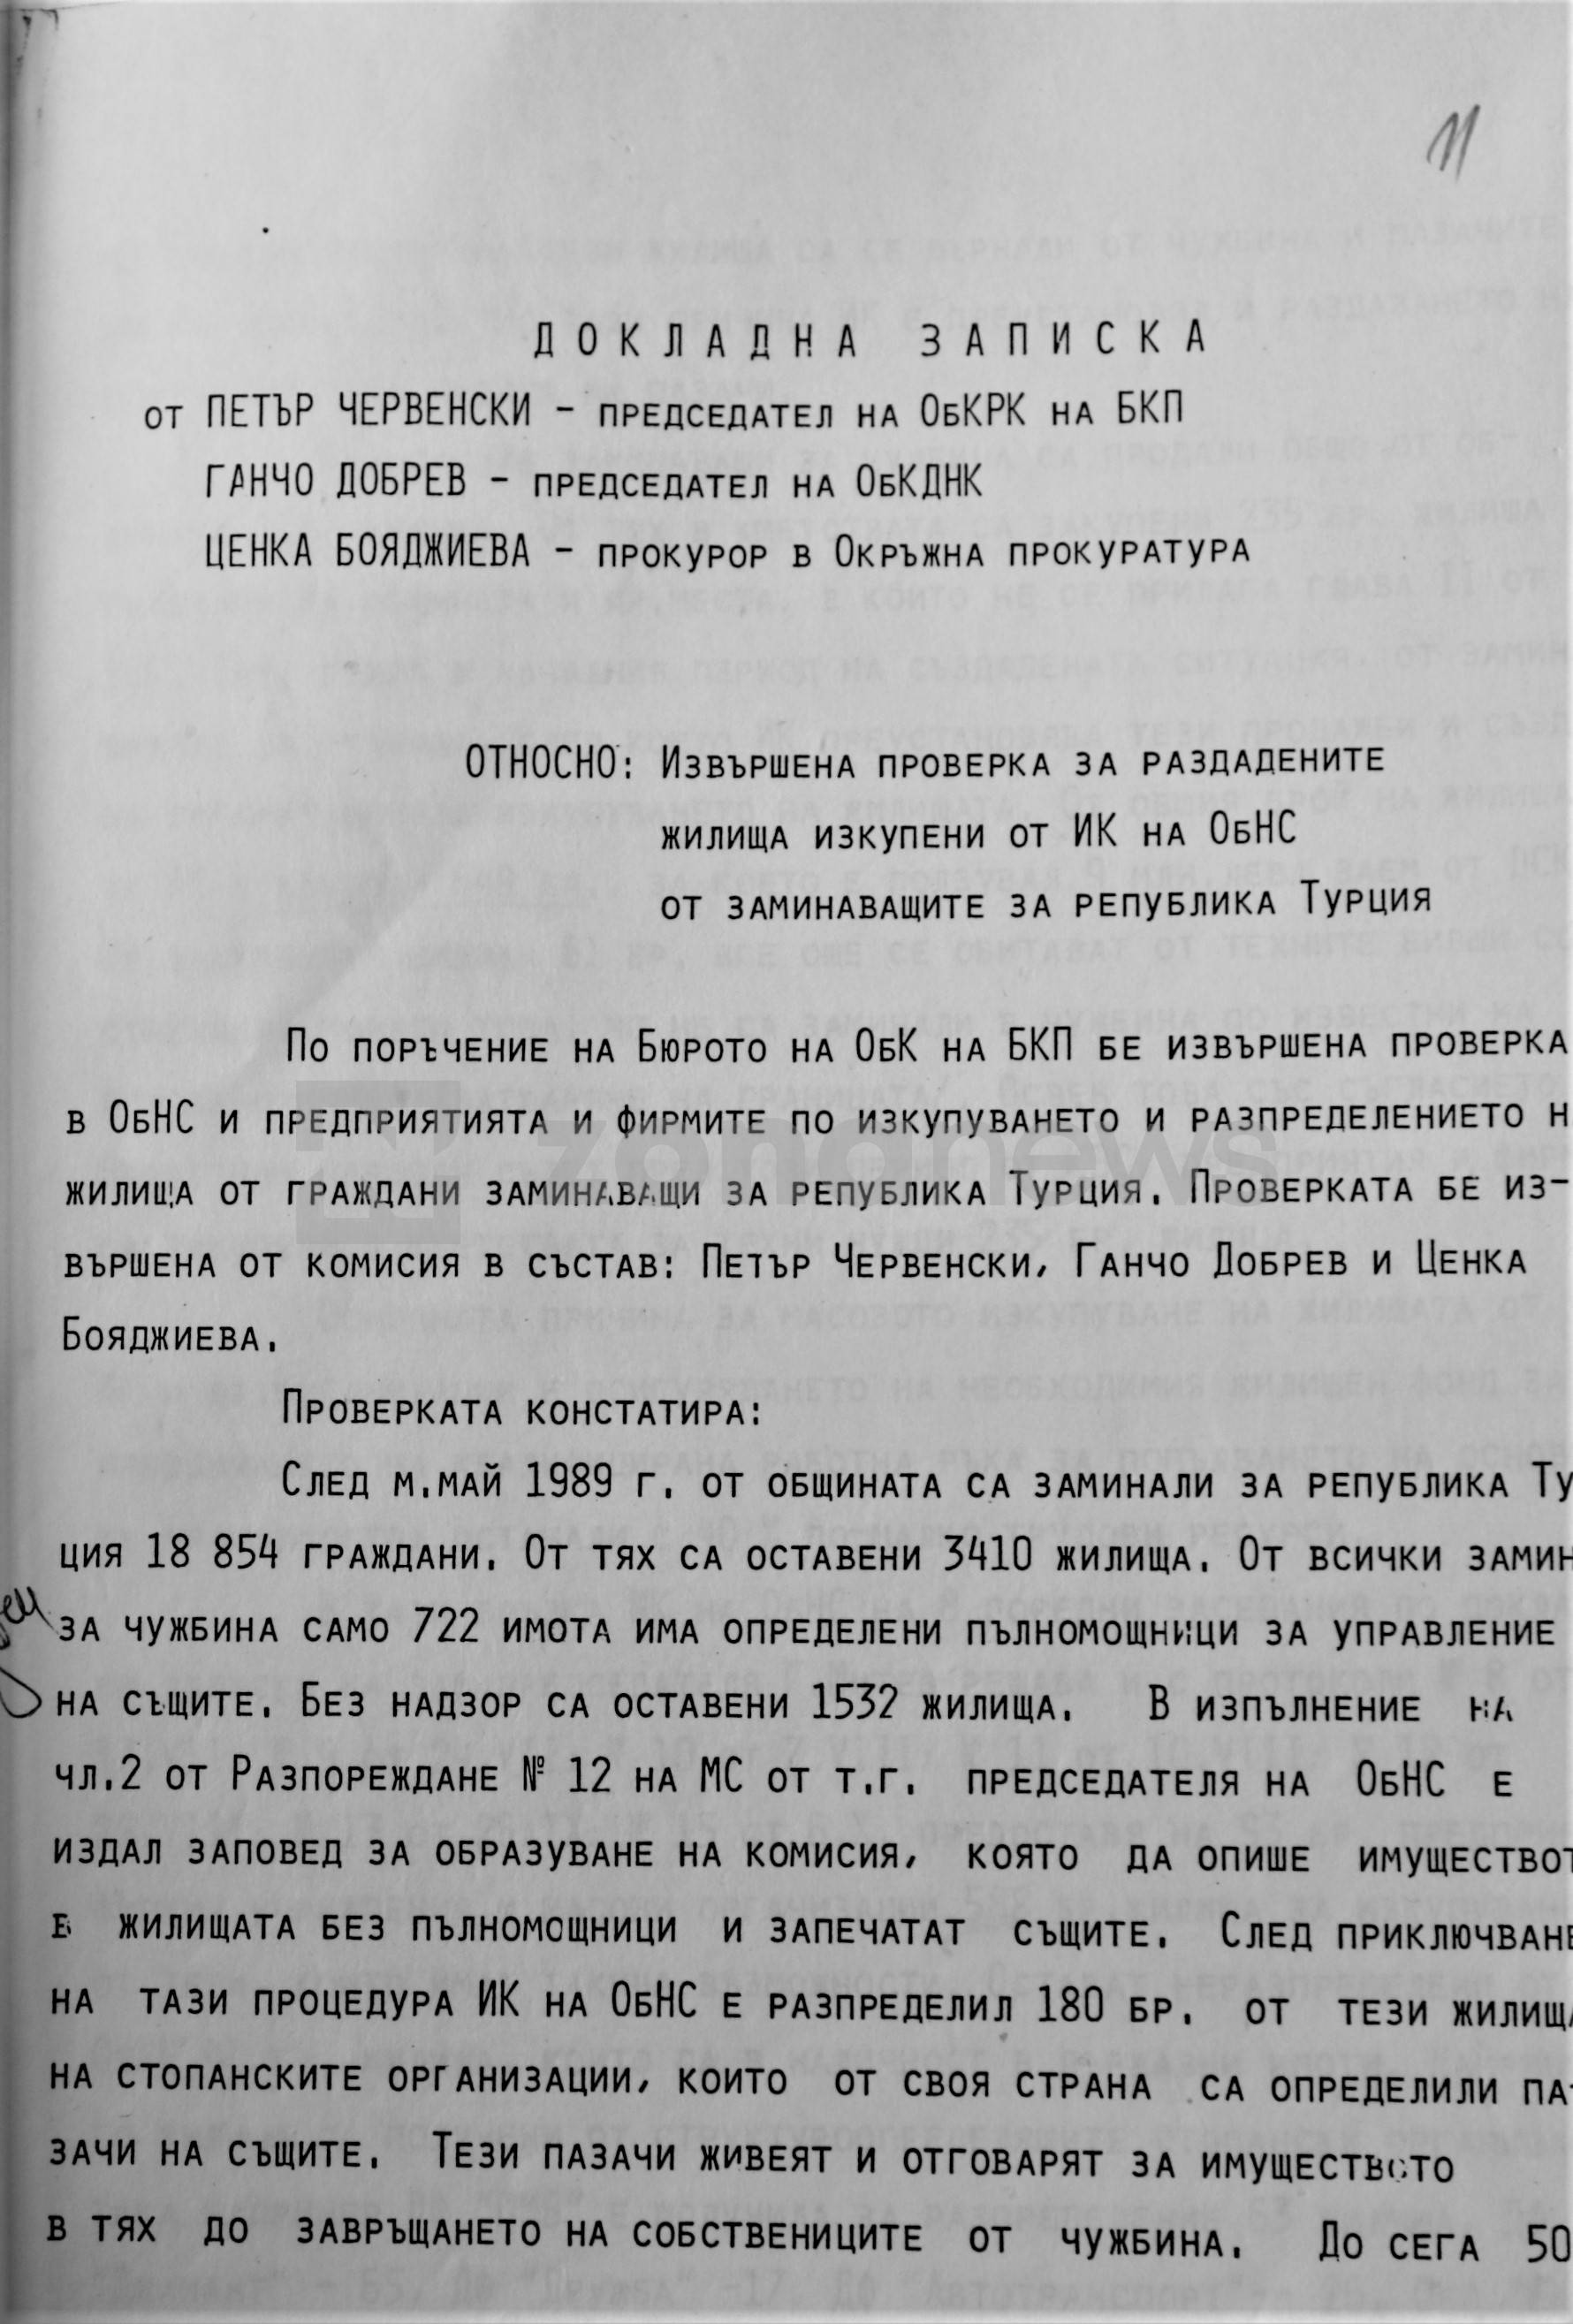 Докладна записка от архива в Разград, описваща разграбването на имуществото на прогонените в Турция български граждани  1989 г.